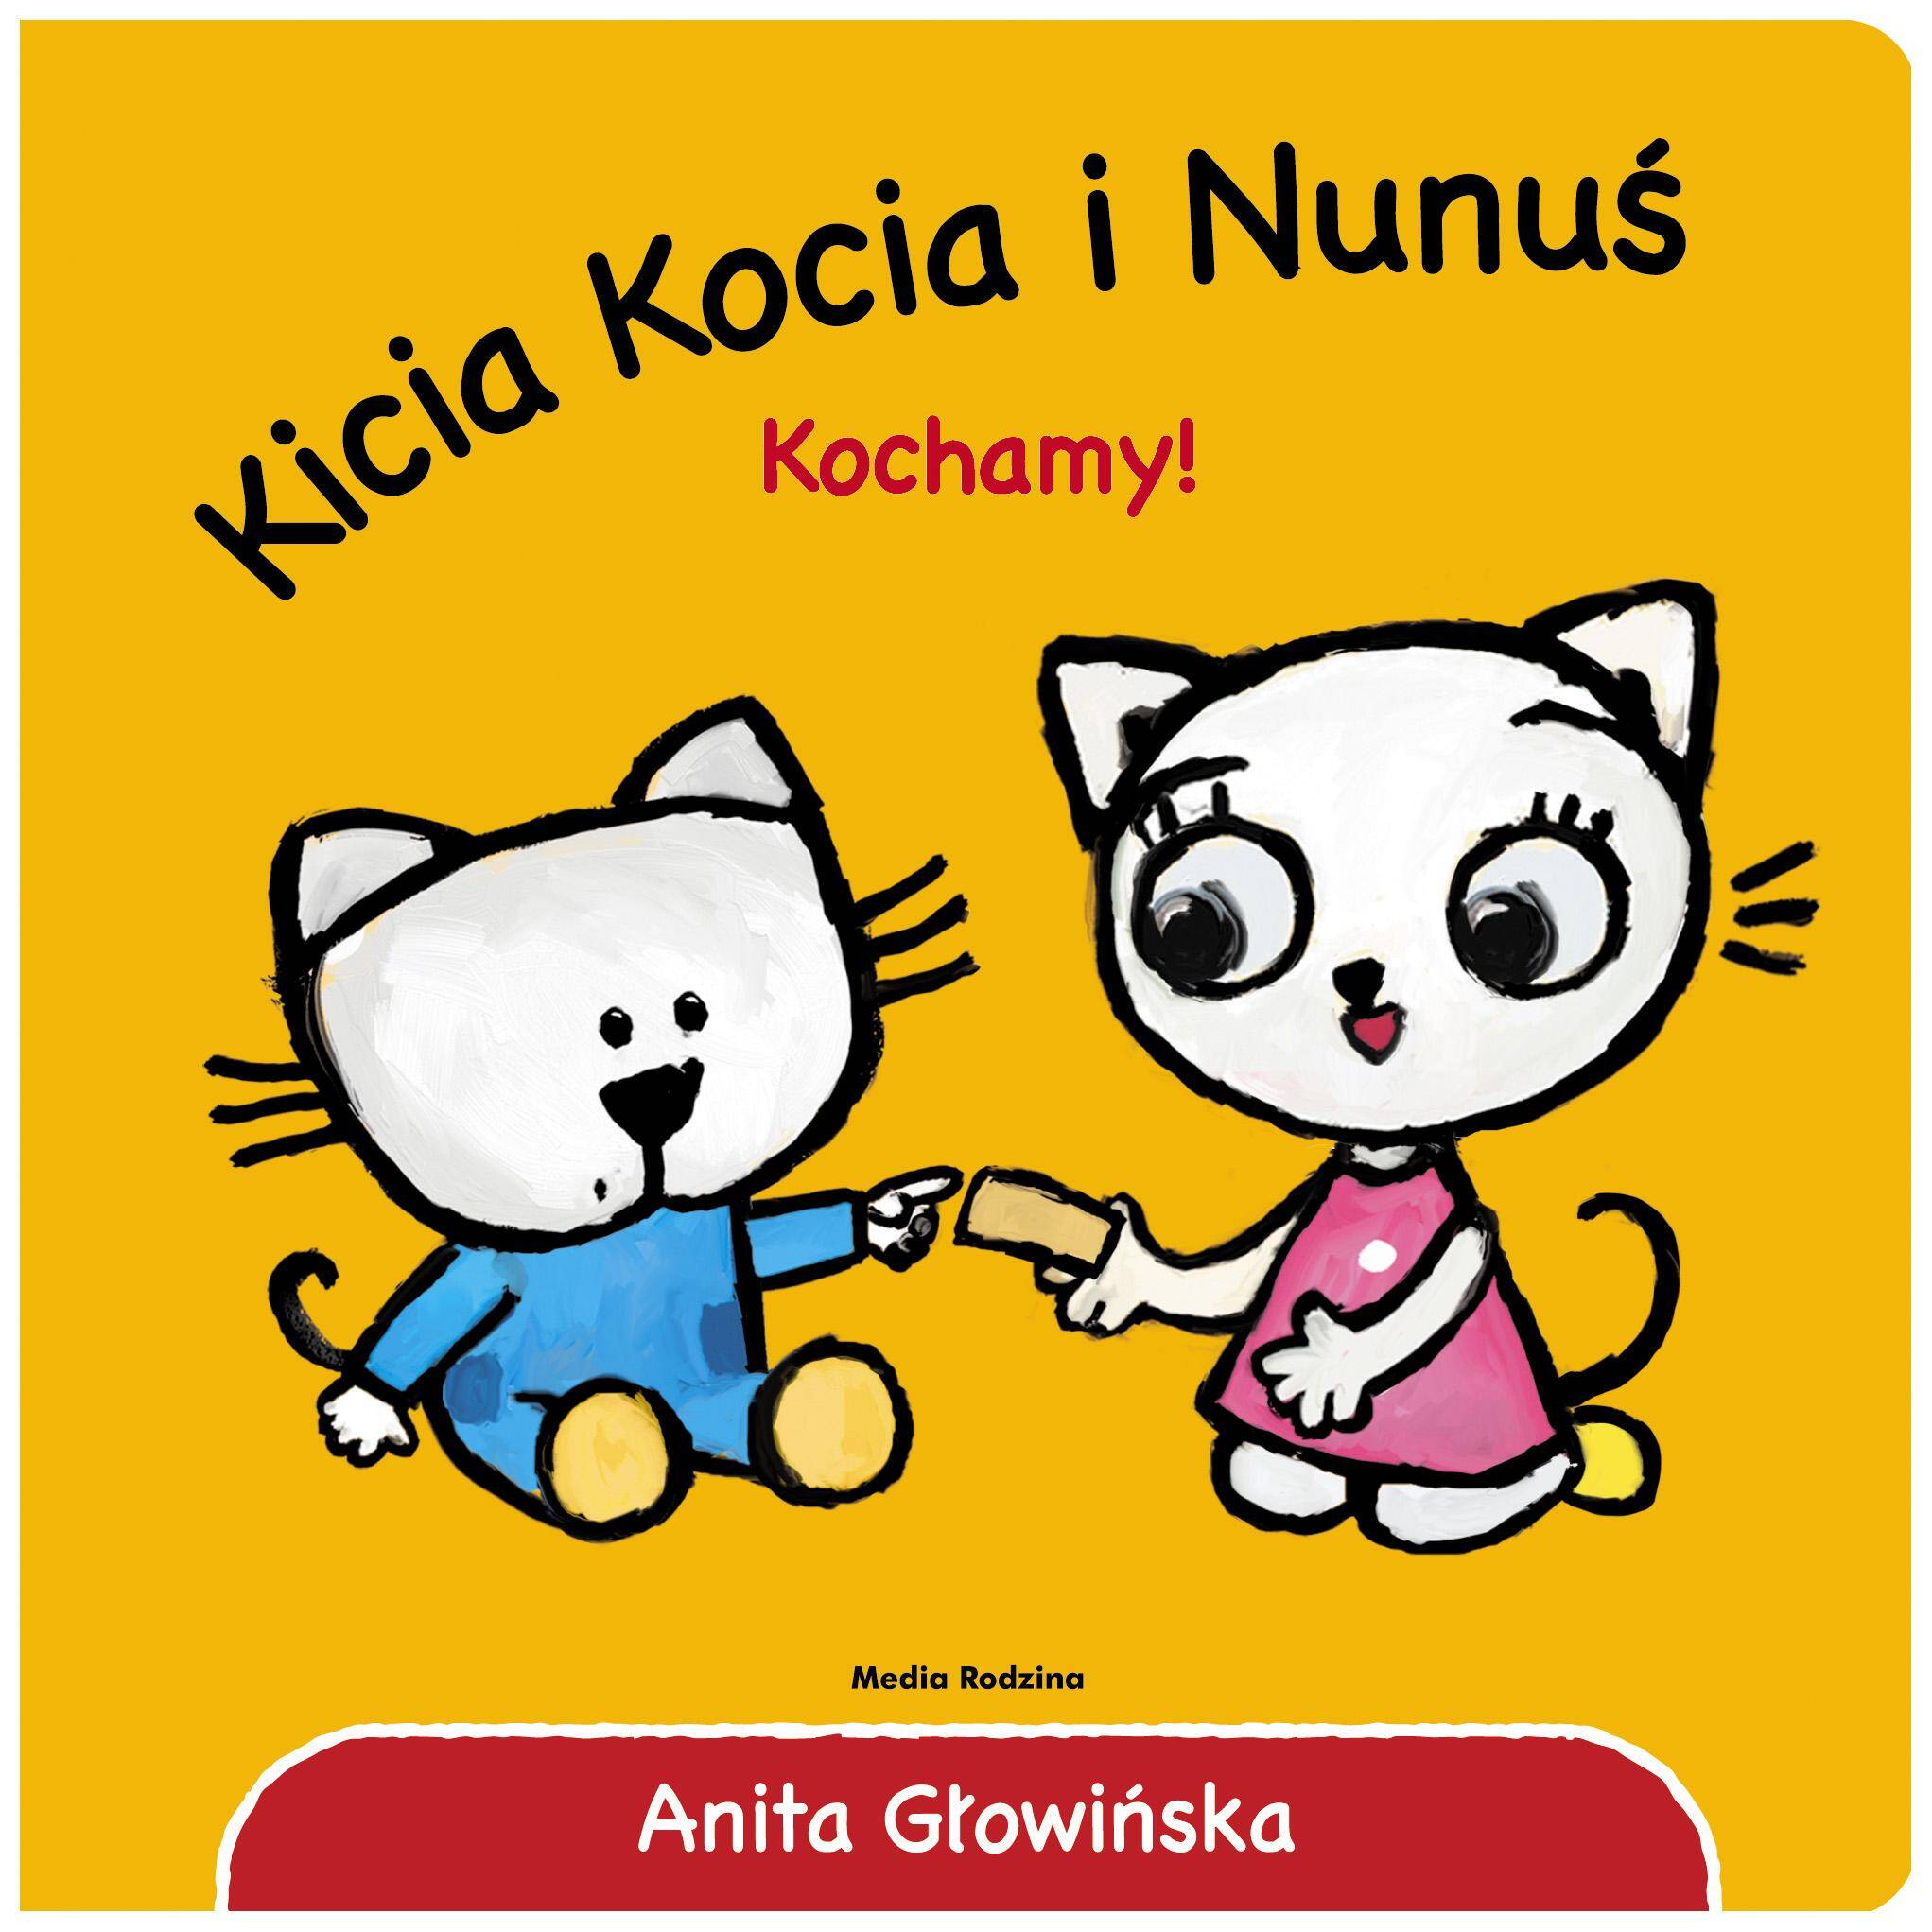 Kochamy! Kicia Kocia i Nunuś